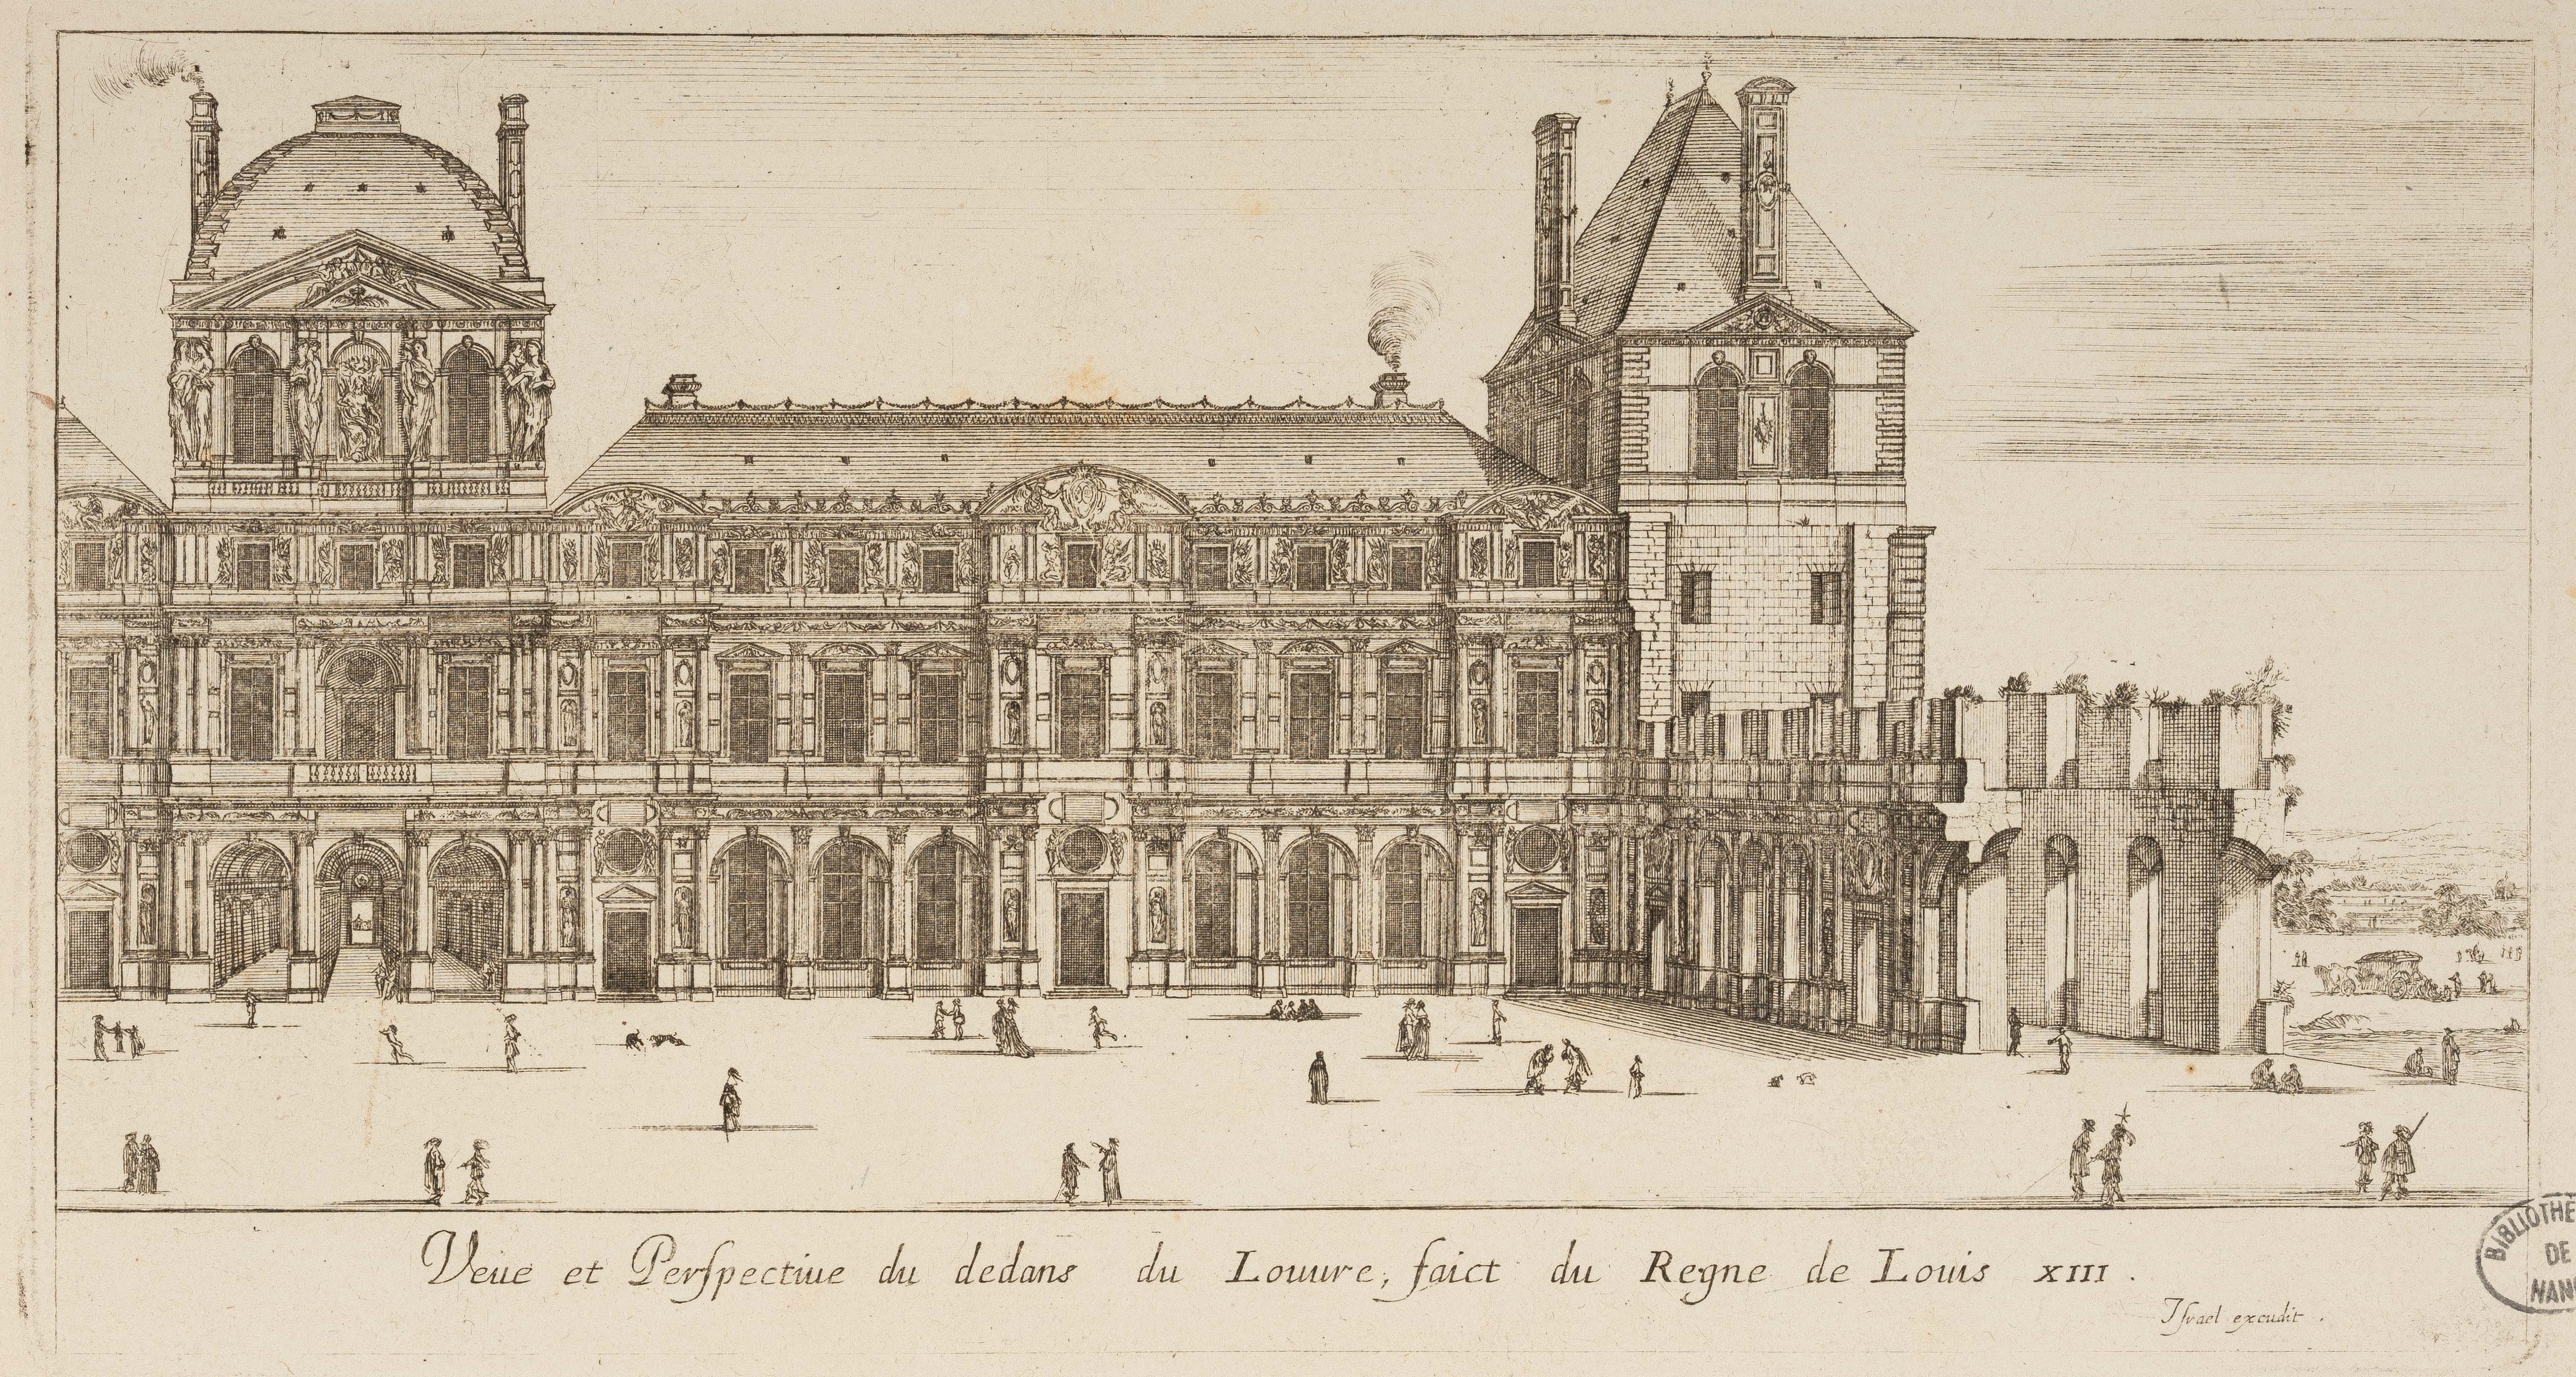 Israël Silvestre : Veue et Perspectiue du dedans du Louvre, faict du Regne de Louis XIII.